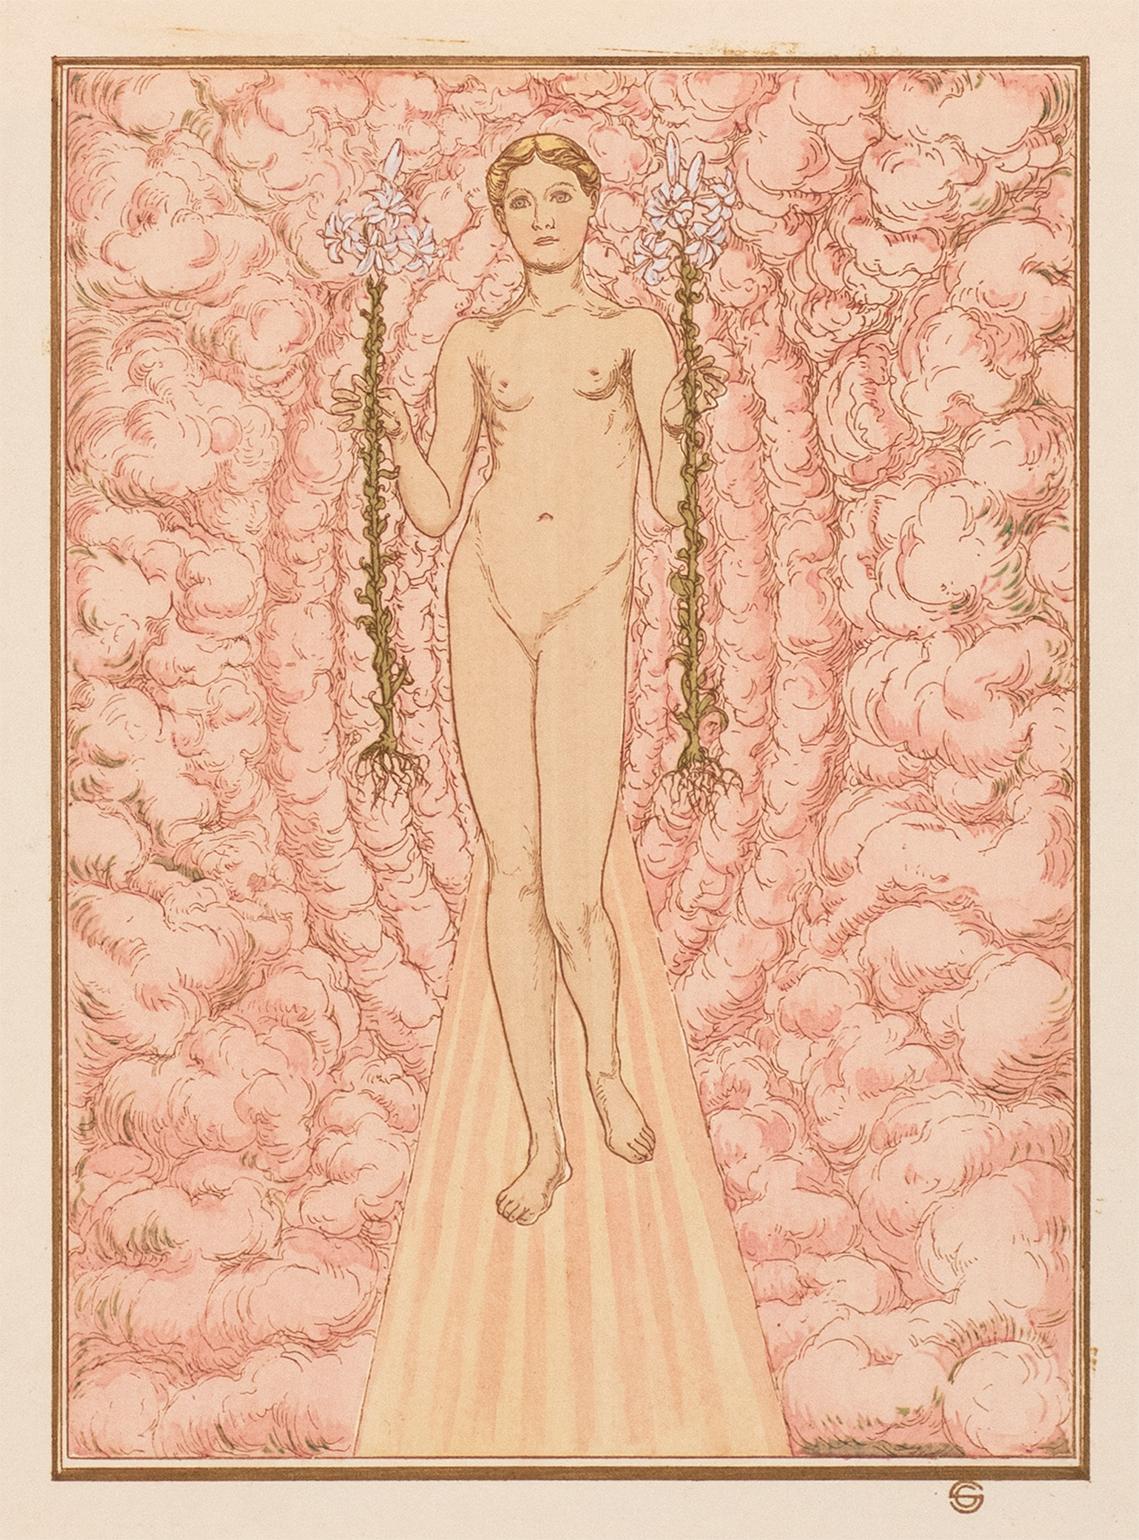 Lithografie aus Carlos Schwabes Serie von handkolorierten symbolistischen Fantasieillustrationen für Catulle Mendès' Hésperus, veröffentlicht 1904 von der Société de propagation des livres d'art, Paris. Dieses Werk stammt aus der äußerst seltenen